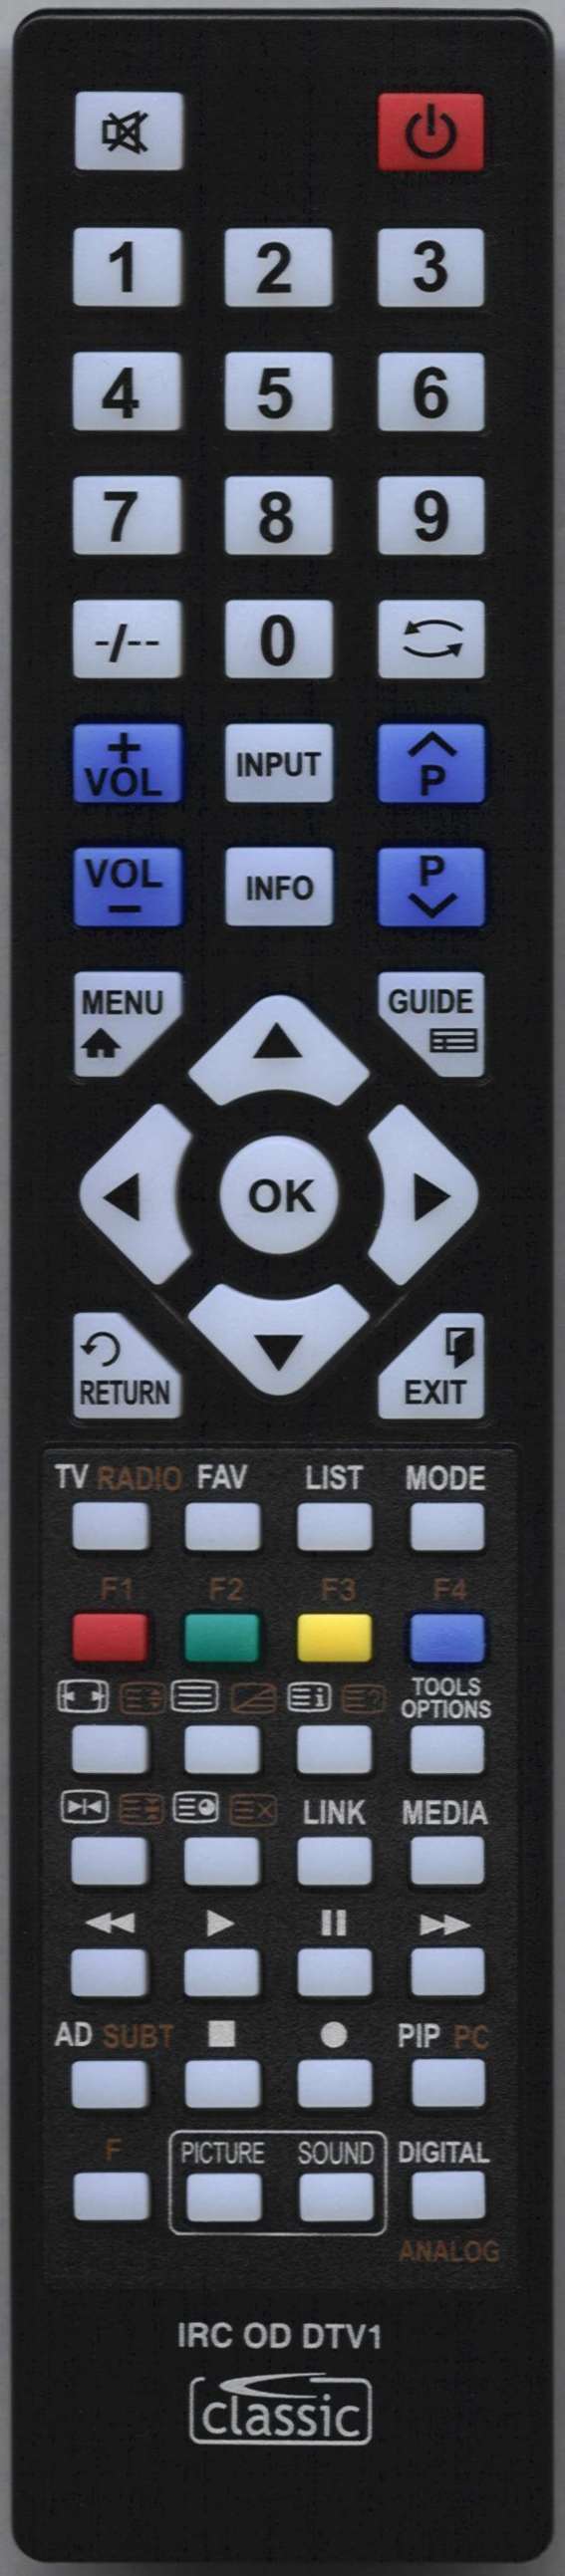 MATSUI TVR 2090TT Remote Control